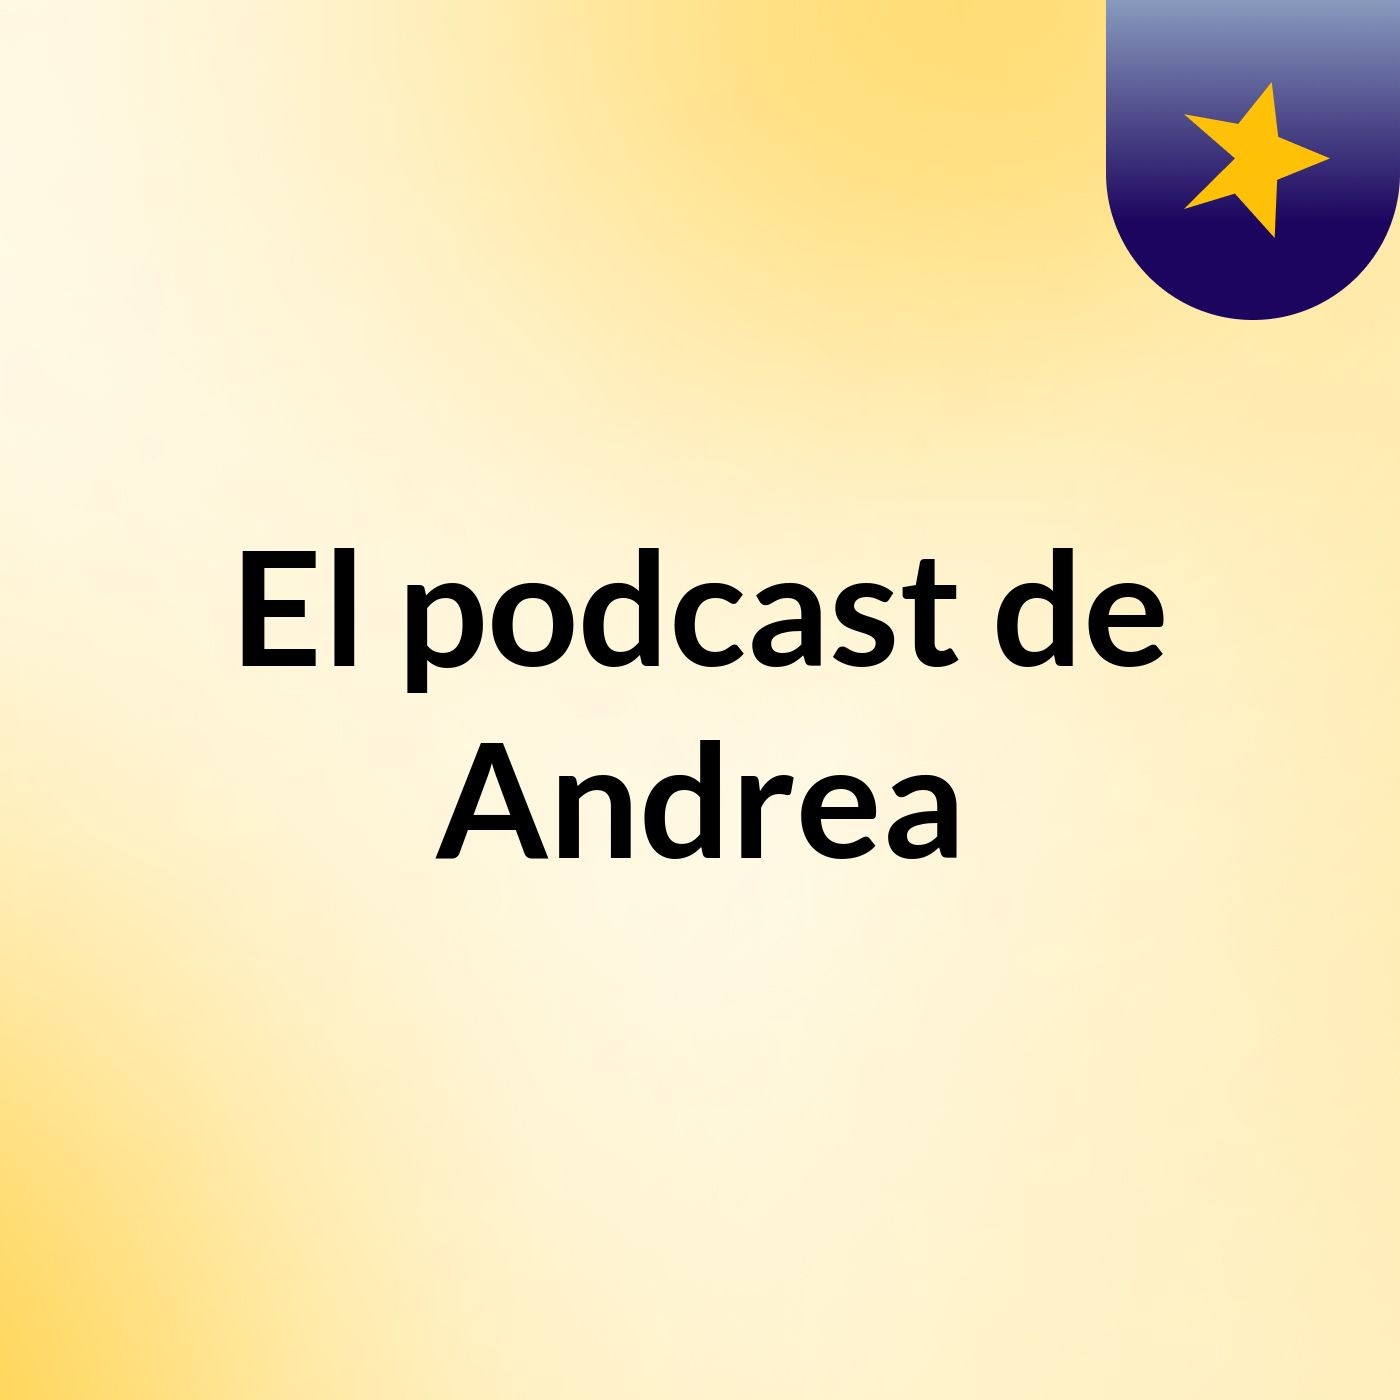 El podcast de Andrea